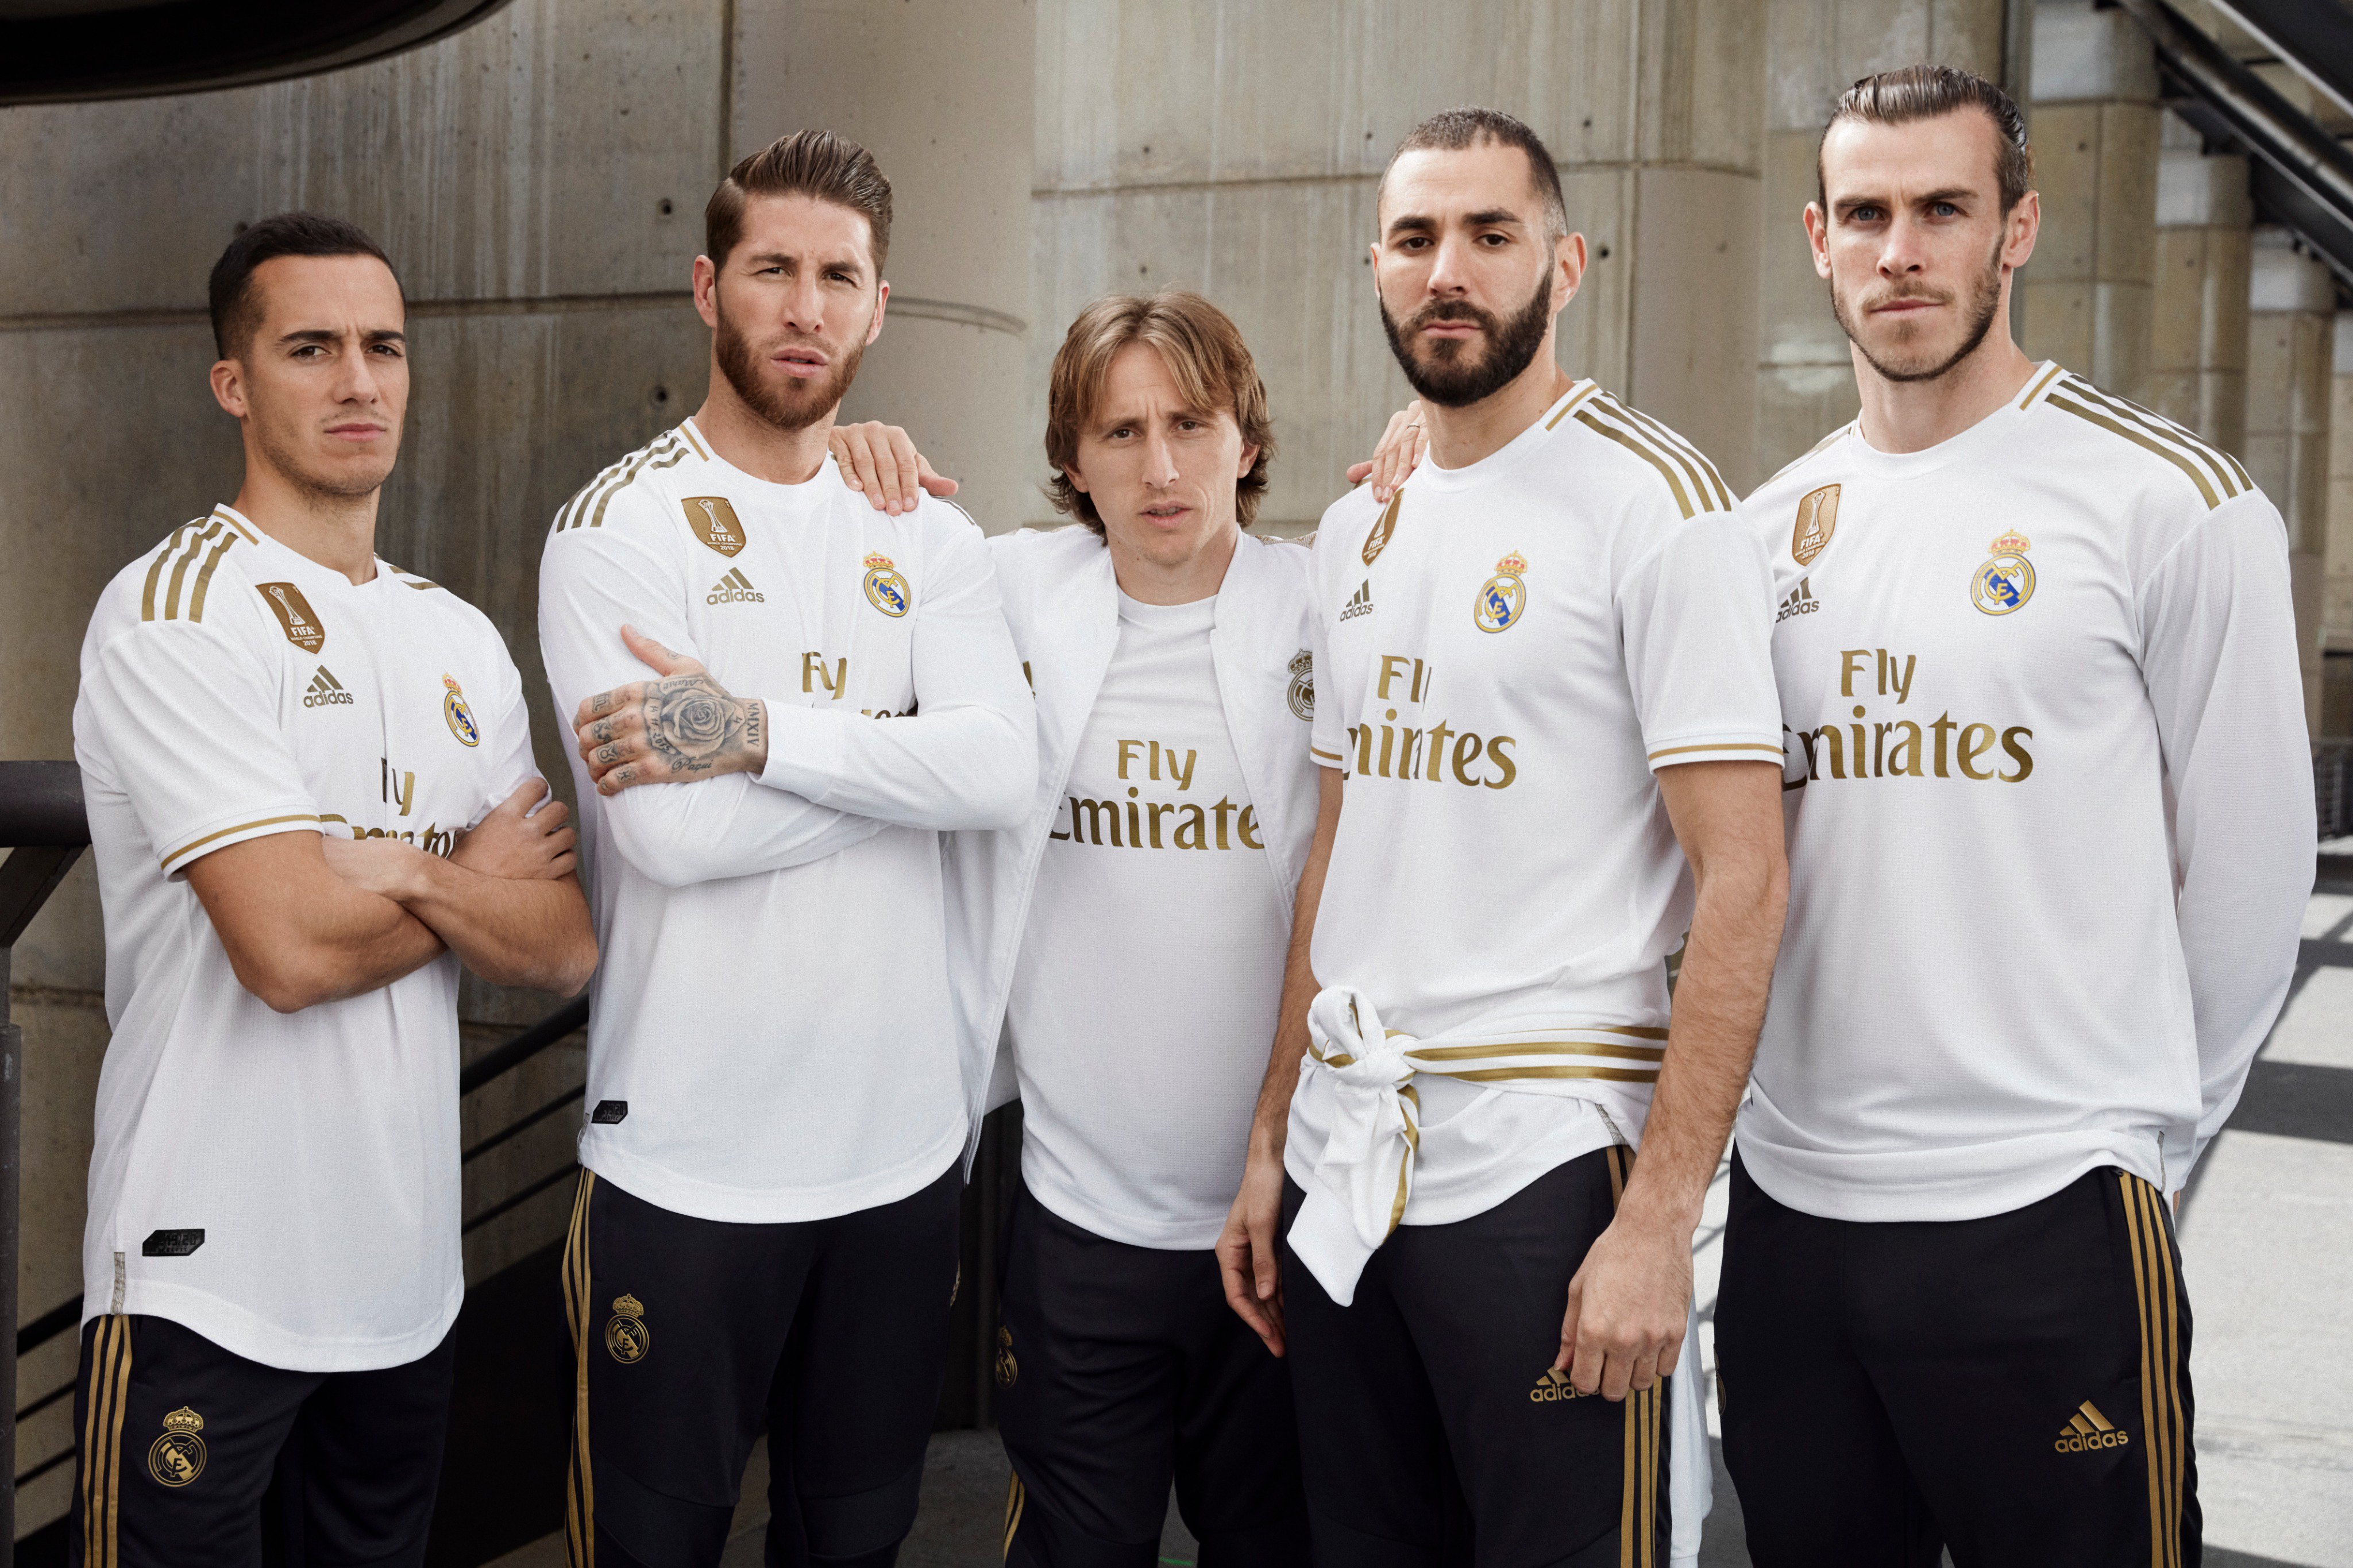 20 июля 2019 года. Новая форма Реал Мадрид. Золотая форма Реал Мадрид. Реал Мадрид адидас команда.